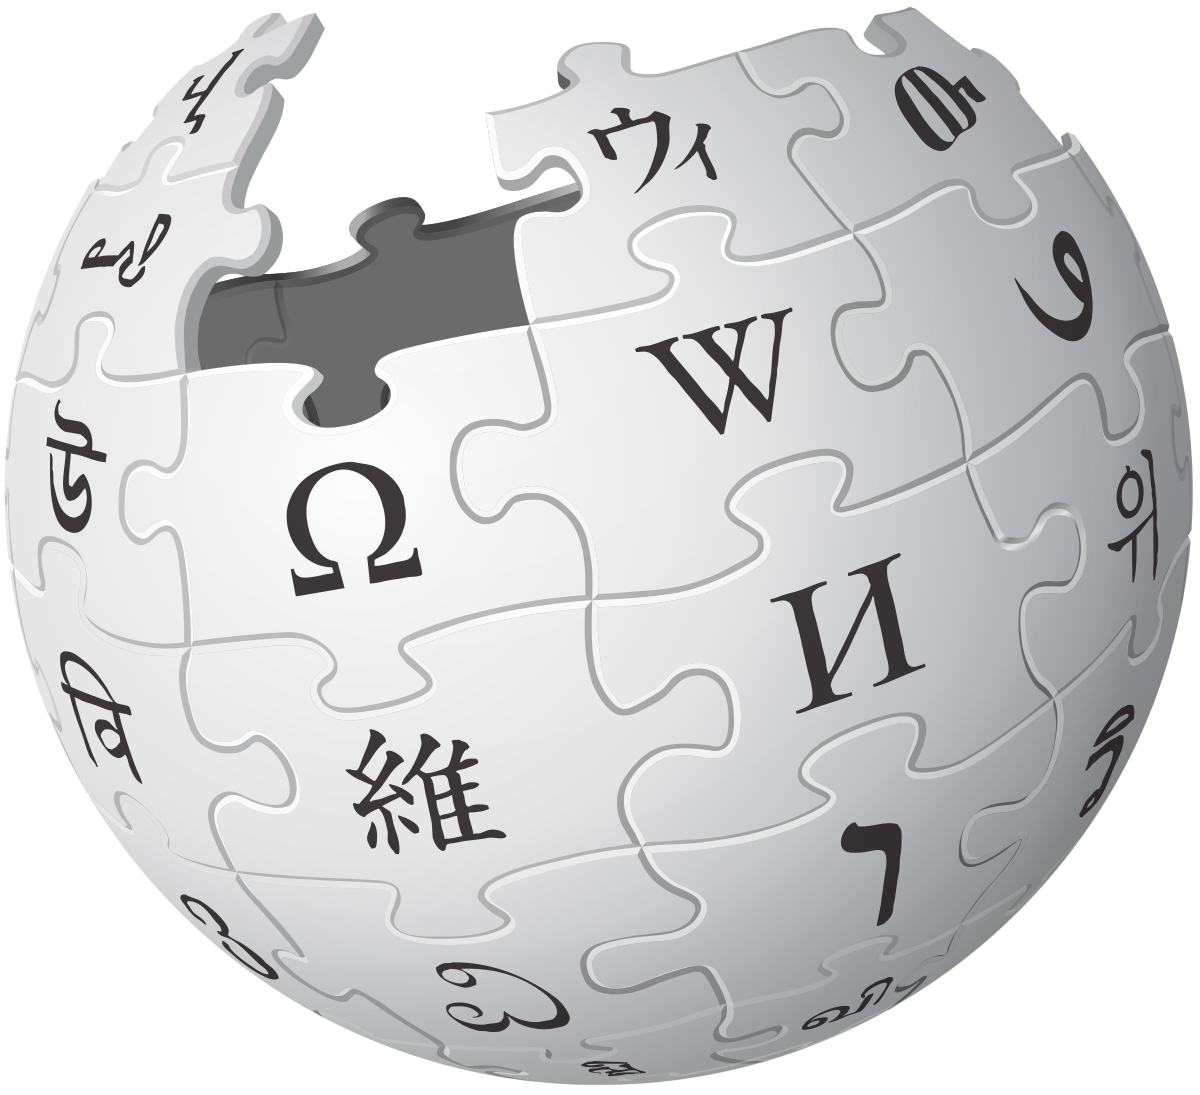 ویکی‌پدیا ؛ محصولی غیرانتفاعی که برندی جهانی شد